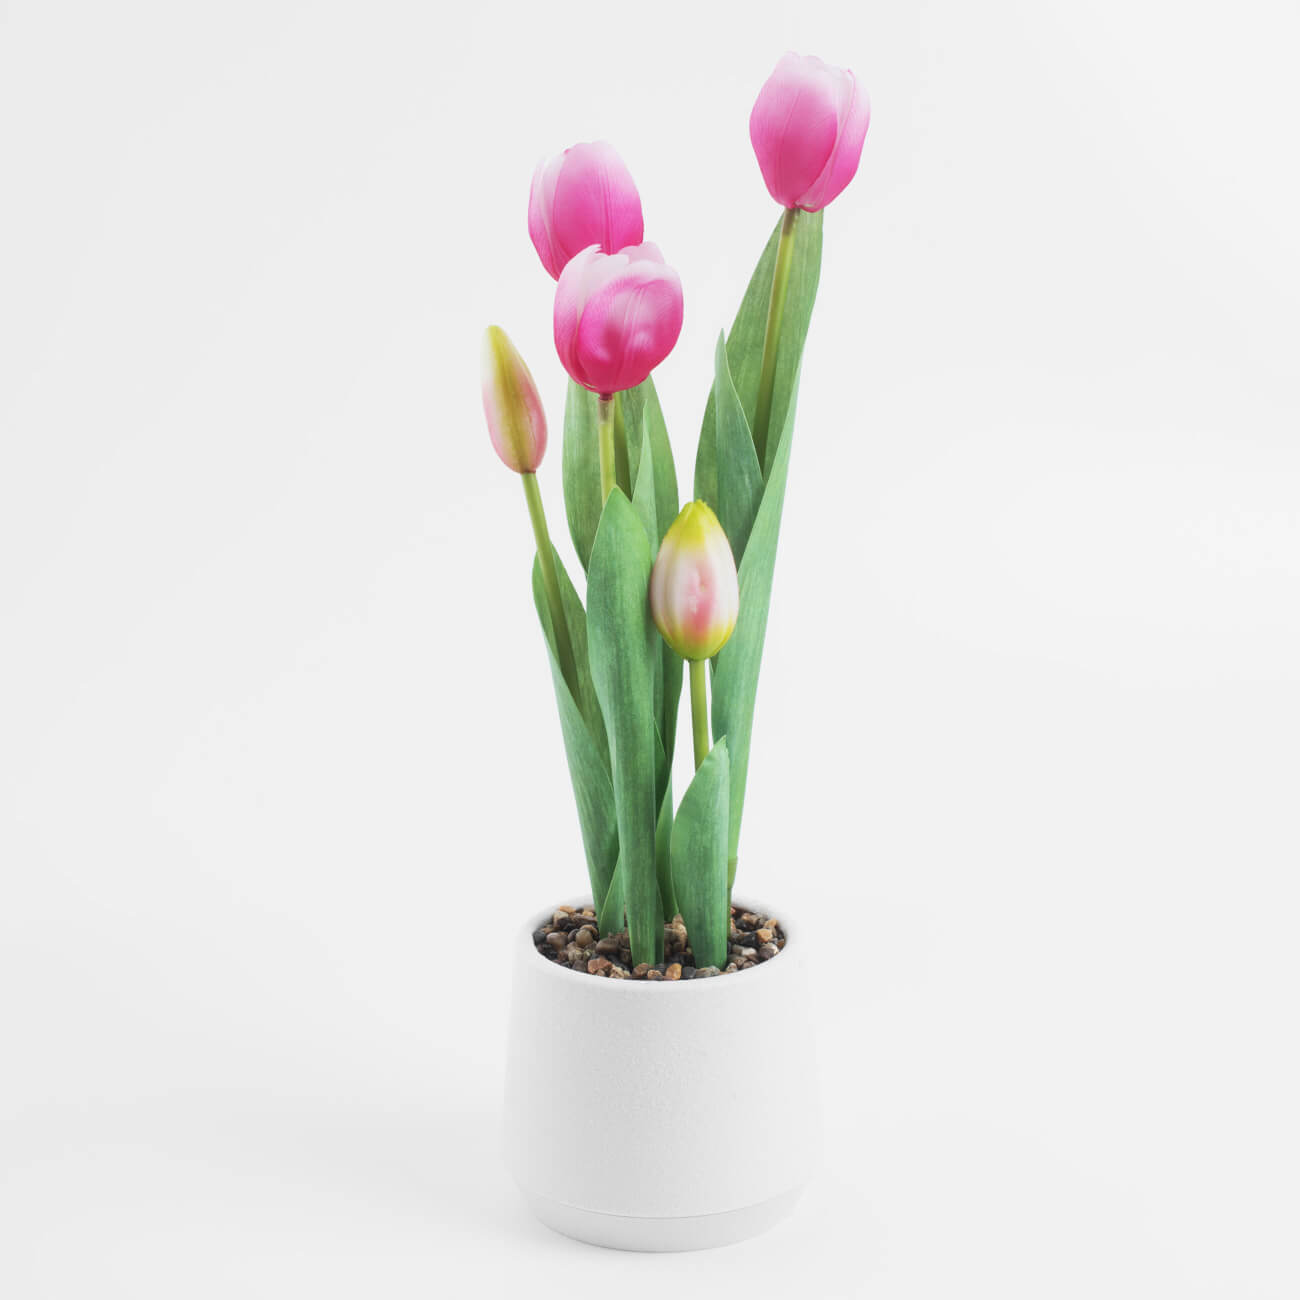 Растение искусственное, 36 см, в горшке, полиэстер/пластик, Розовые тюльпаны, Tulip garden растение искусственное 16 см в крафте полиэстер бумага розовые цветы new bunch